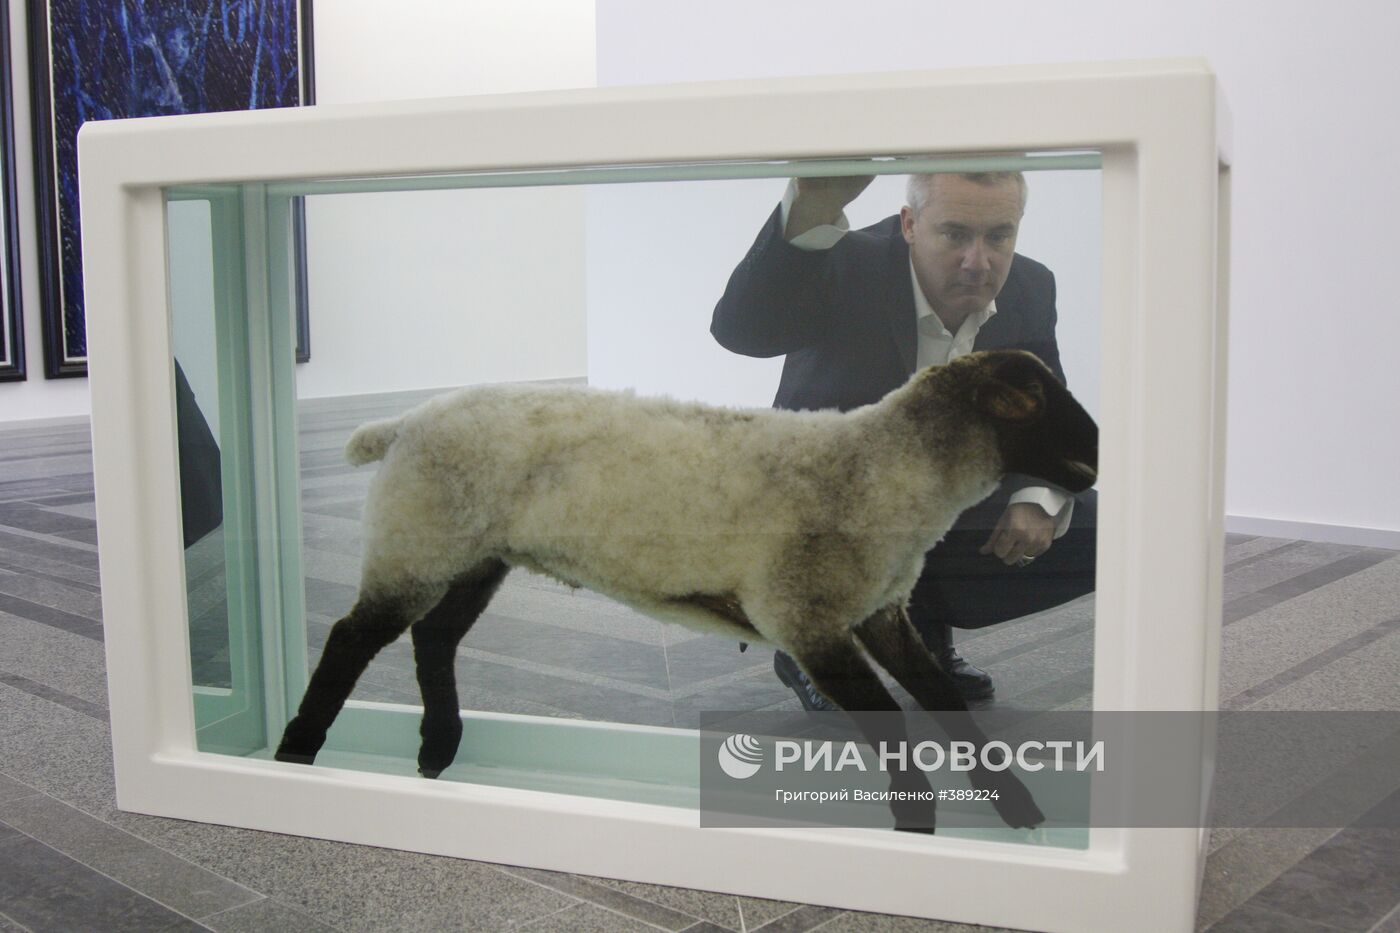 Выставка Дэмиена Херста "Реквием" открылась в Киеве